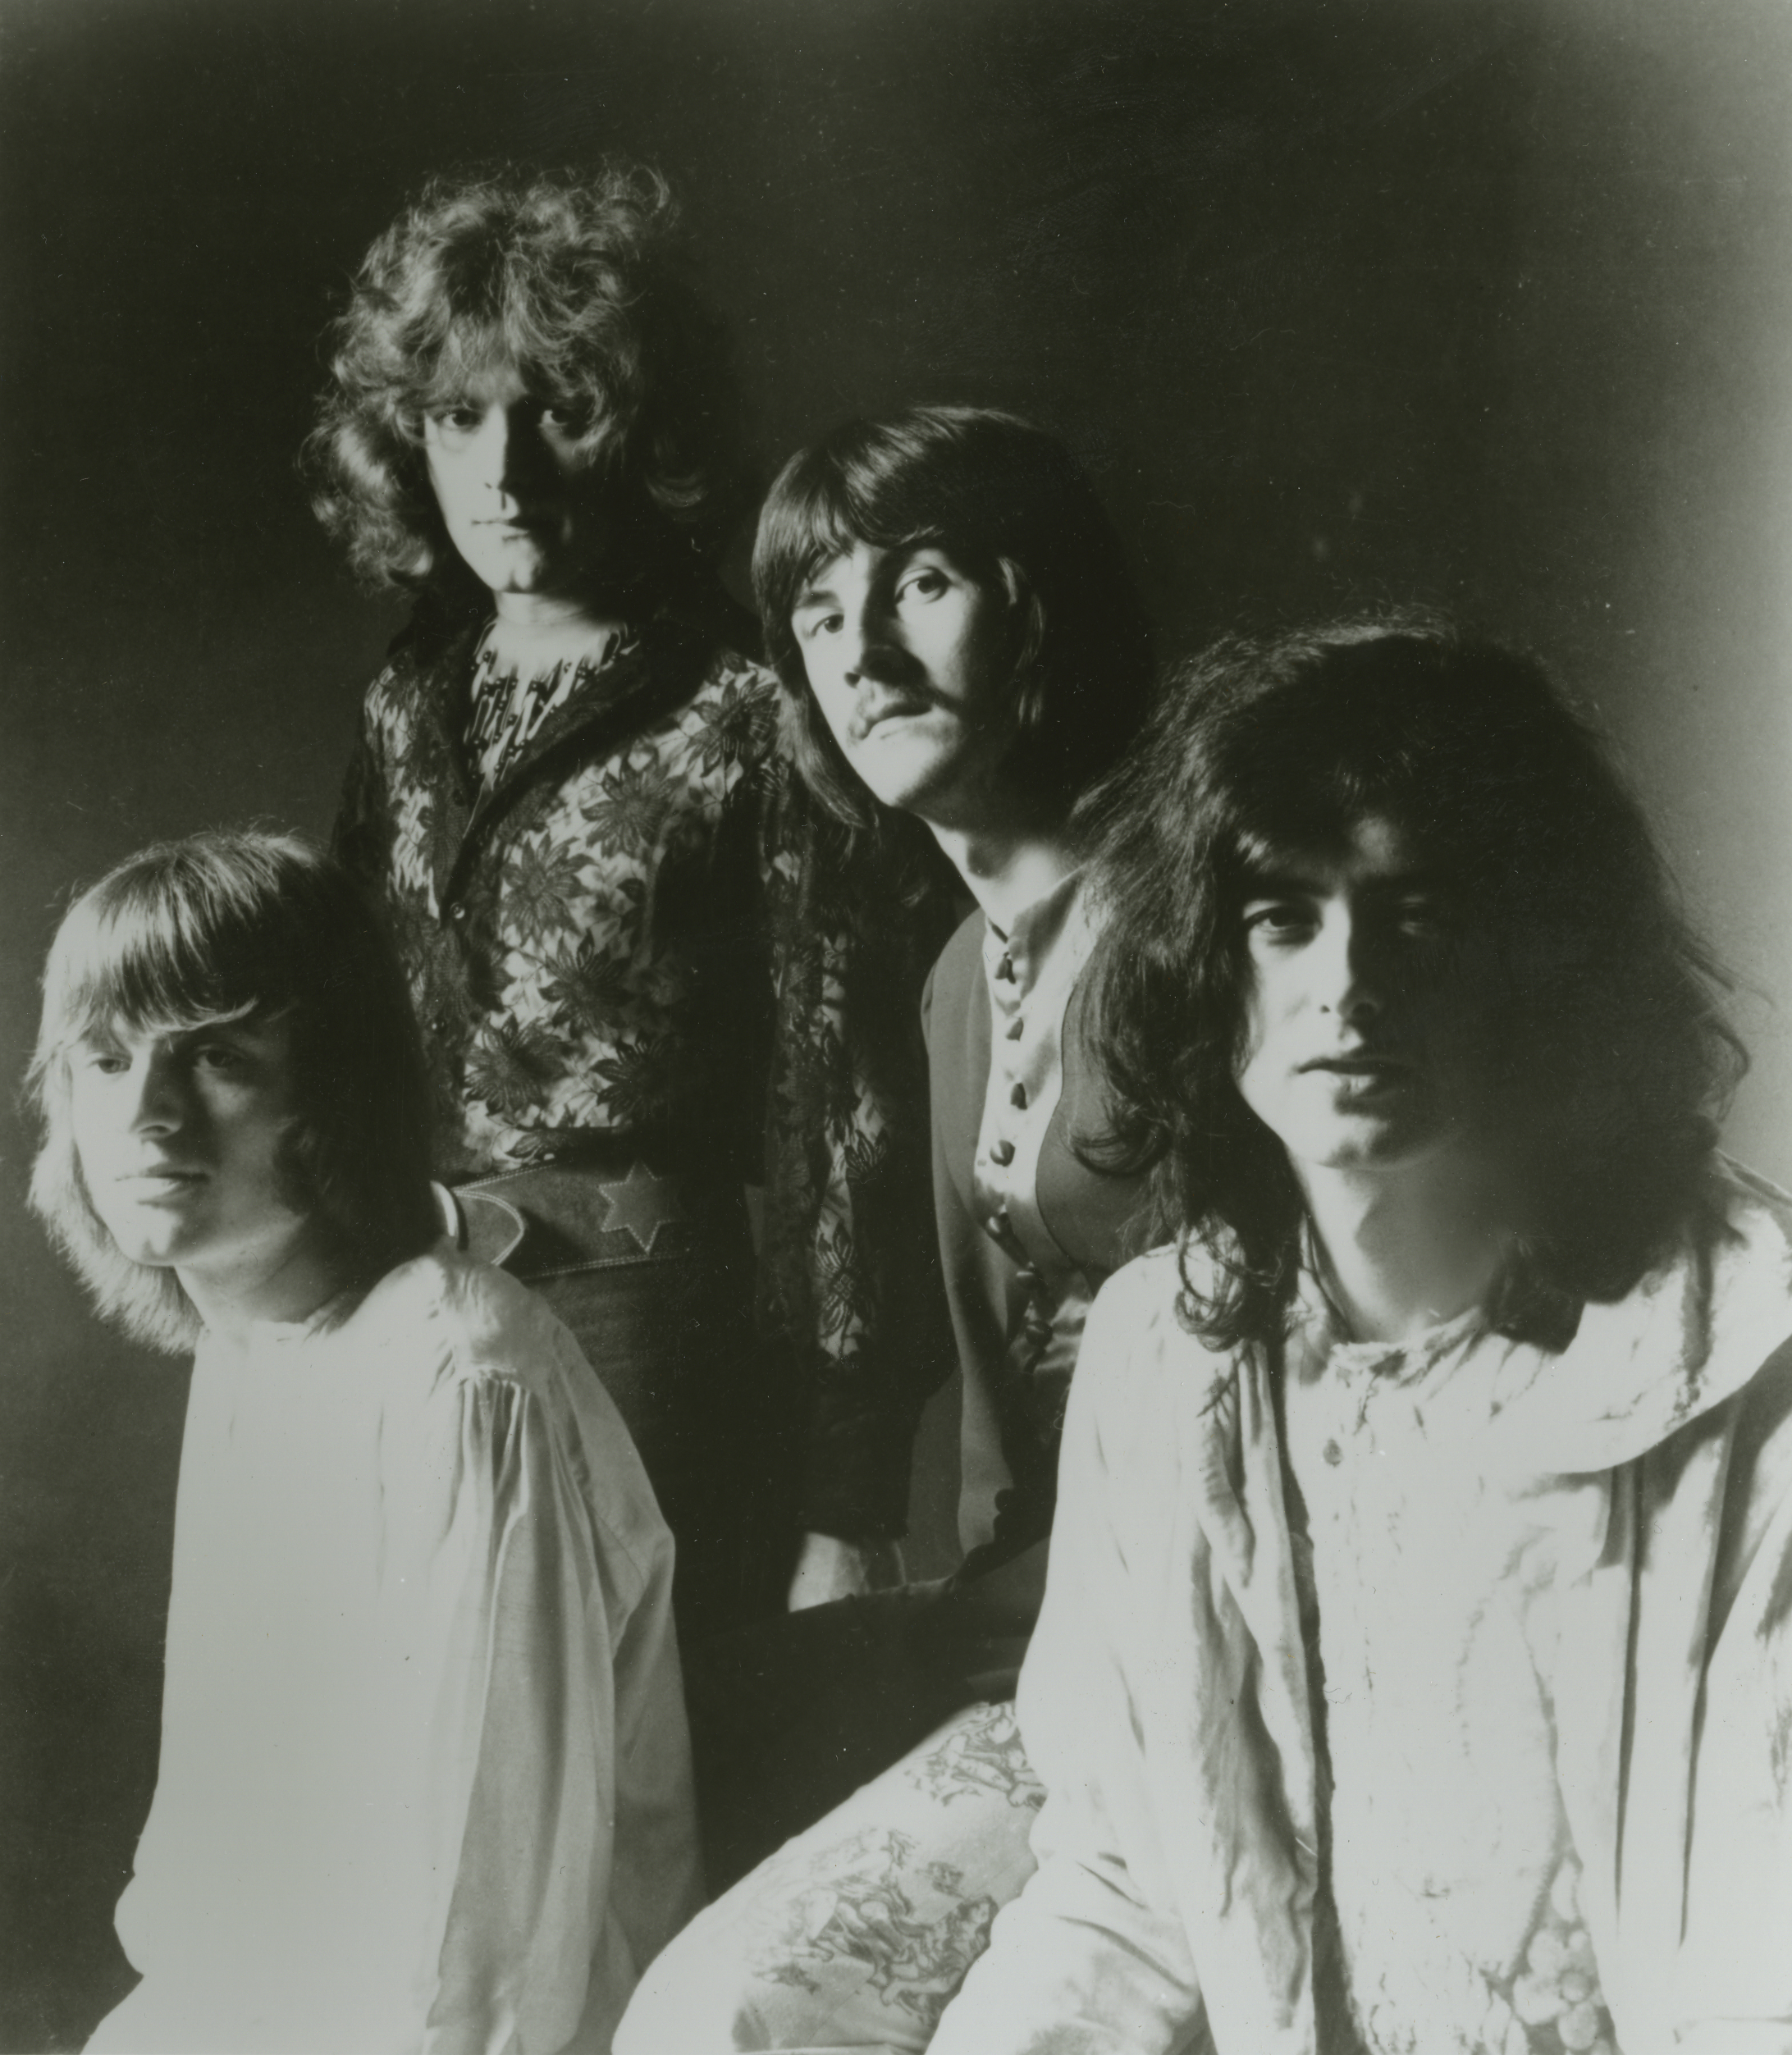 Comprar vinilo Led Zeppelin III ( Original Remasterizado )